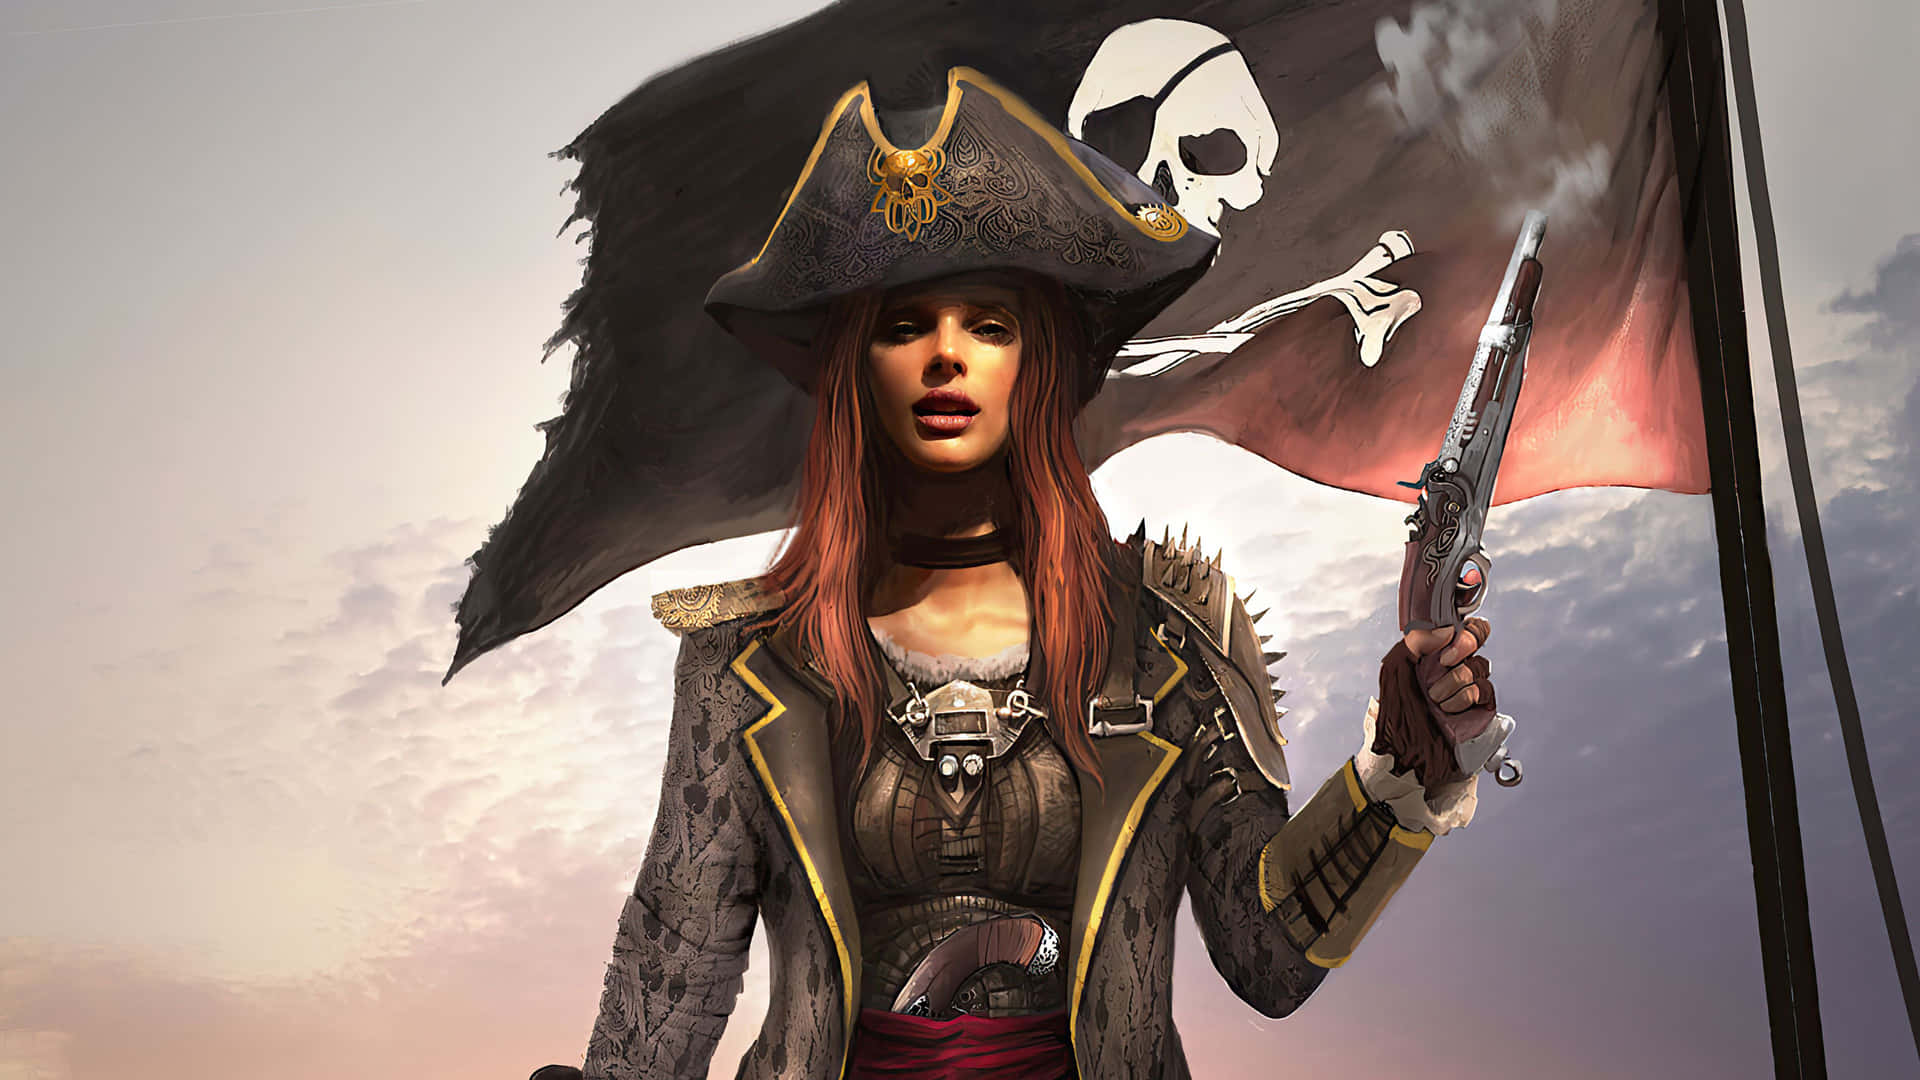 Ingenskatt Är Trygg Med Denna Onda Pirat På Jakt